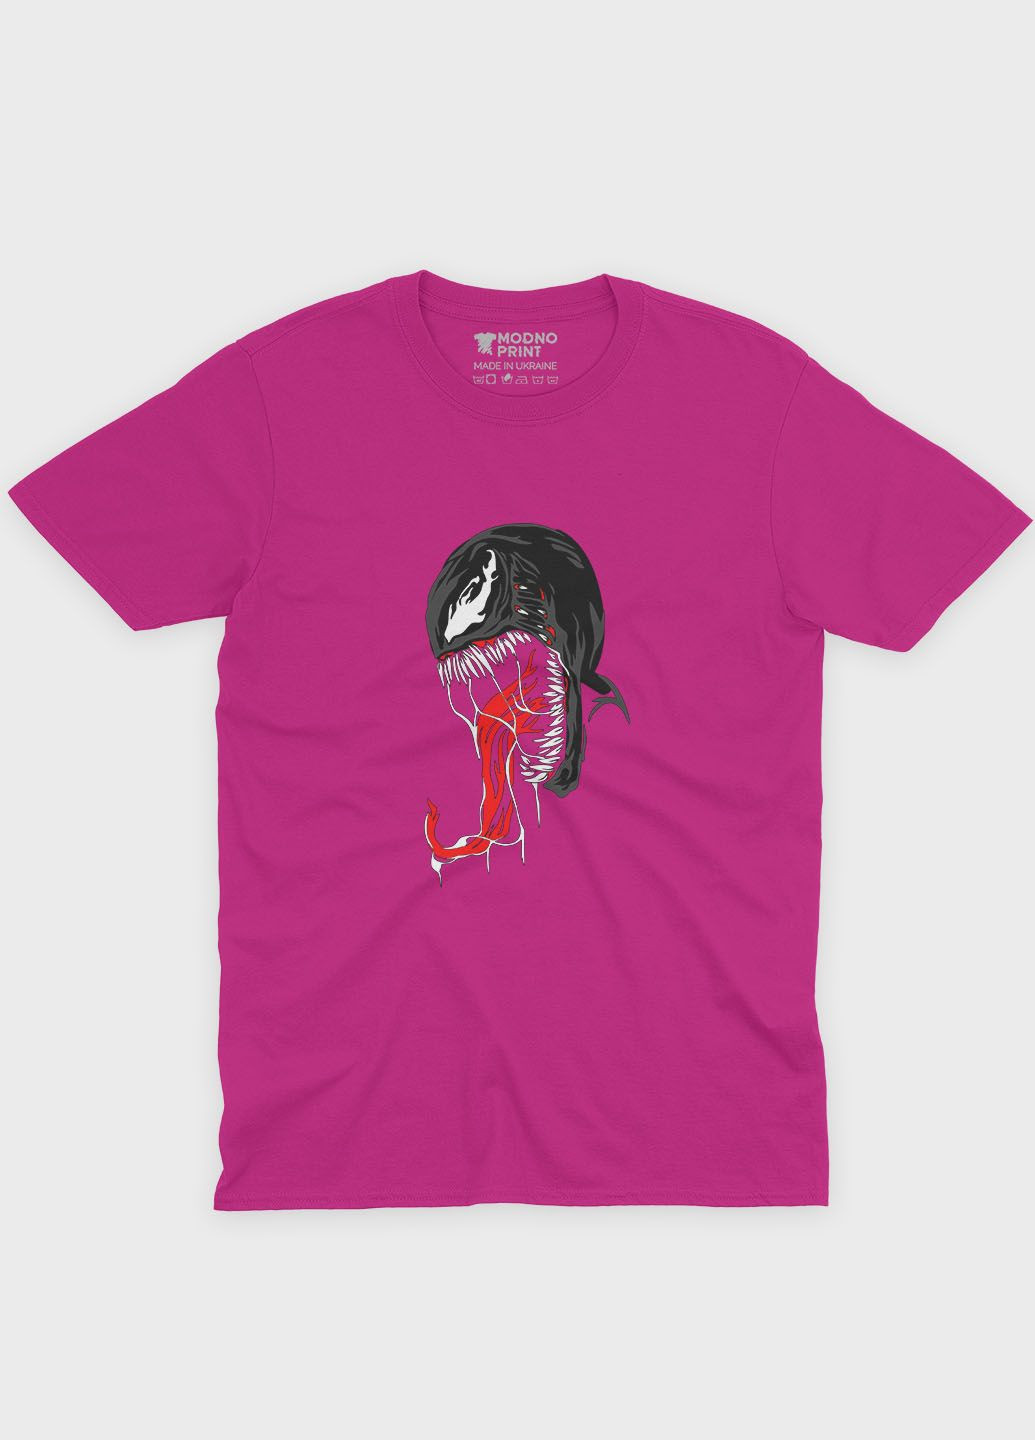 Розовая демисезонная футболка для мальчика с принтом супервора - веном (ts001-1-fuxj-006-013-021-b) Modno